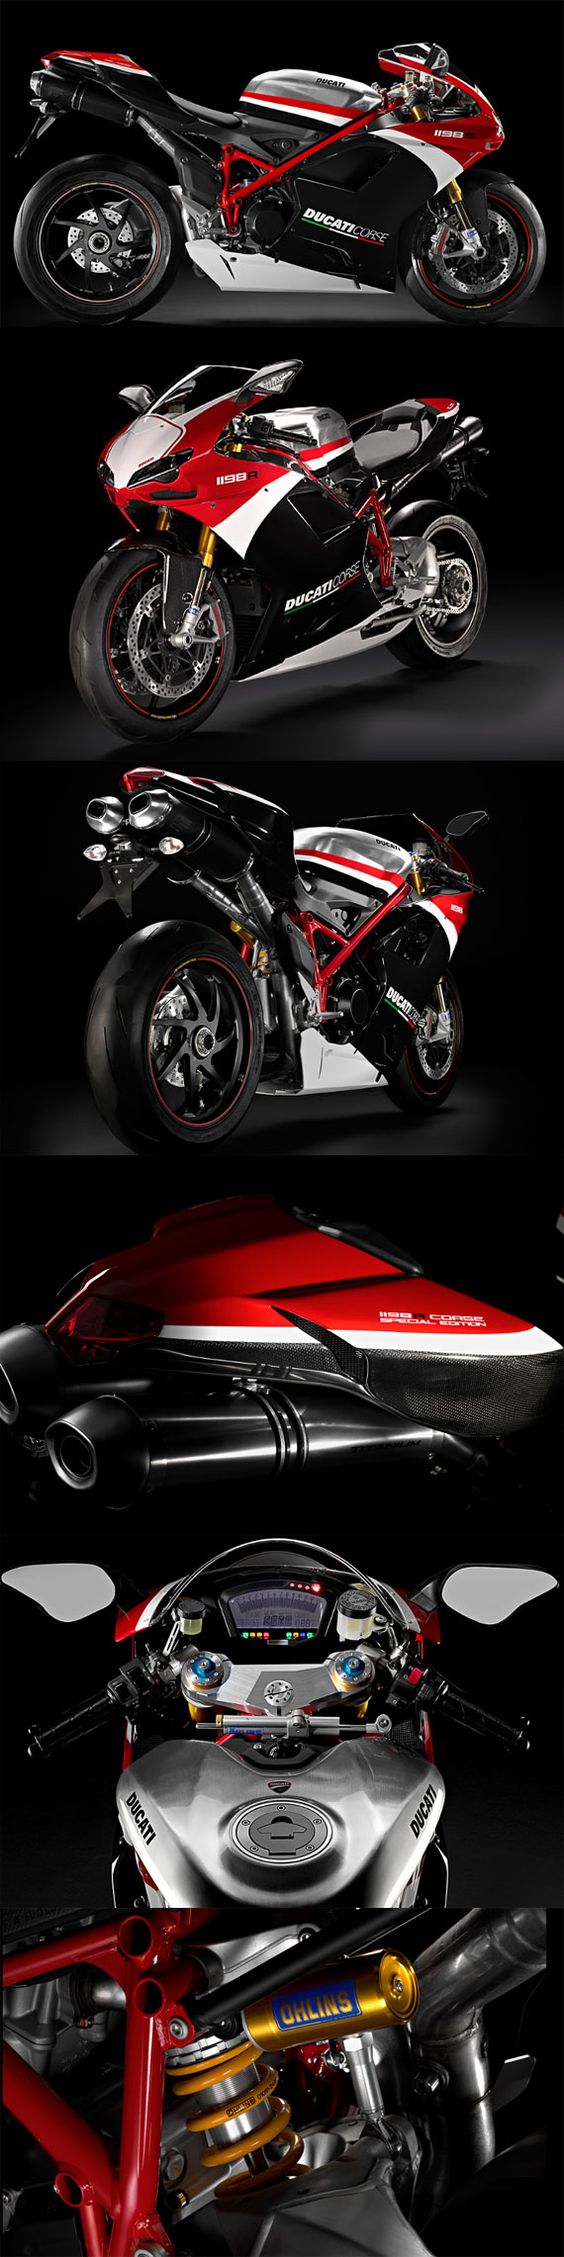 Ducati 1198 S & 1198 R Corse Special Editions